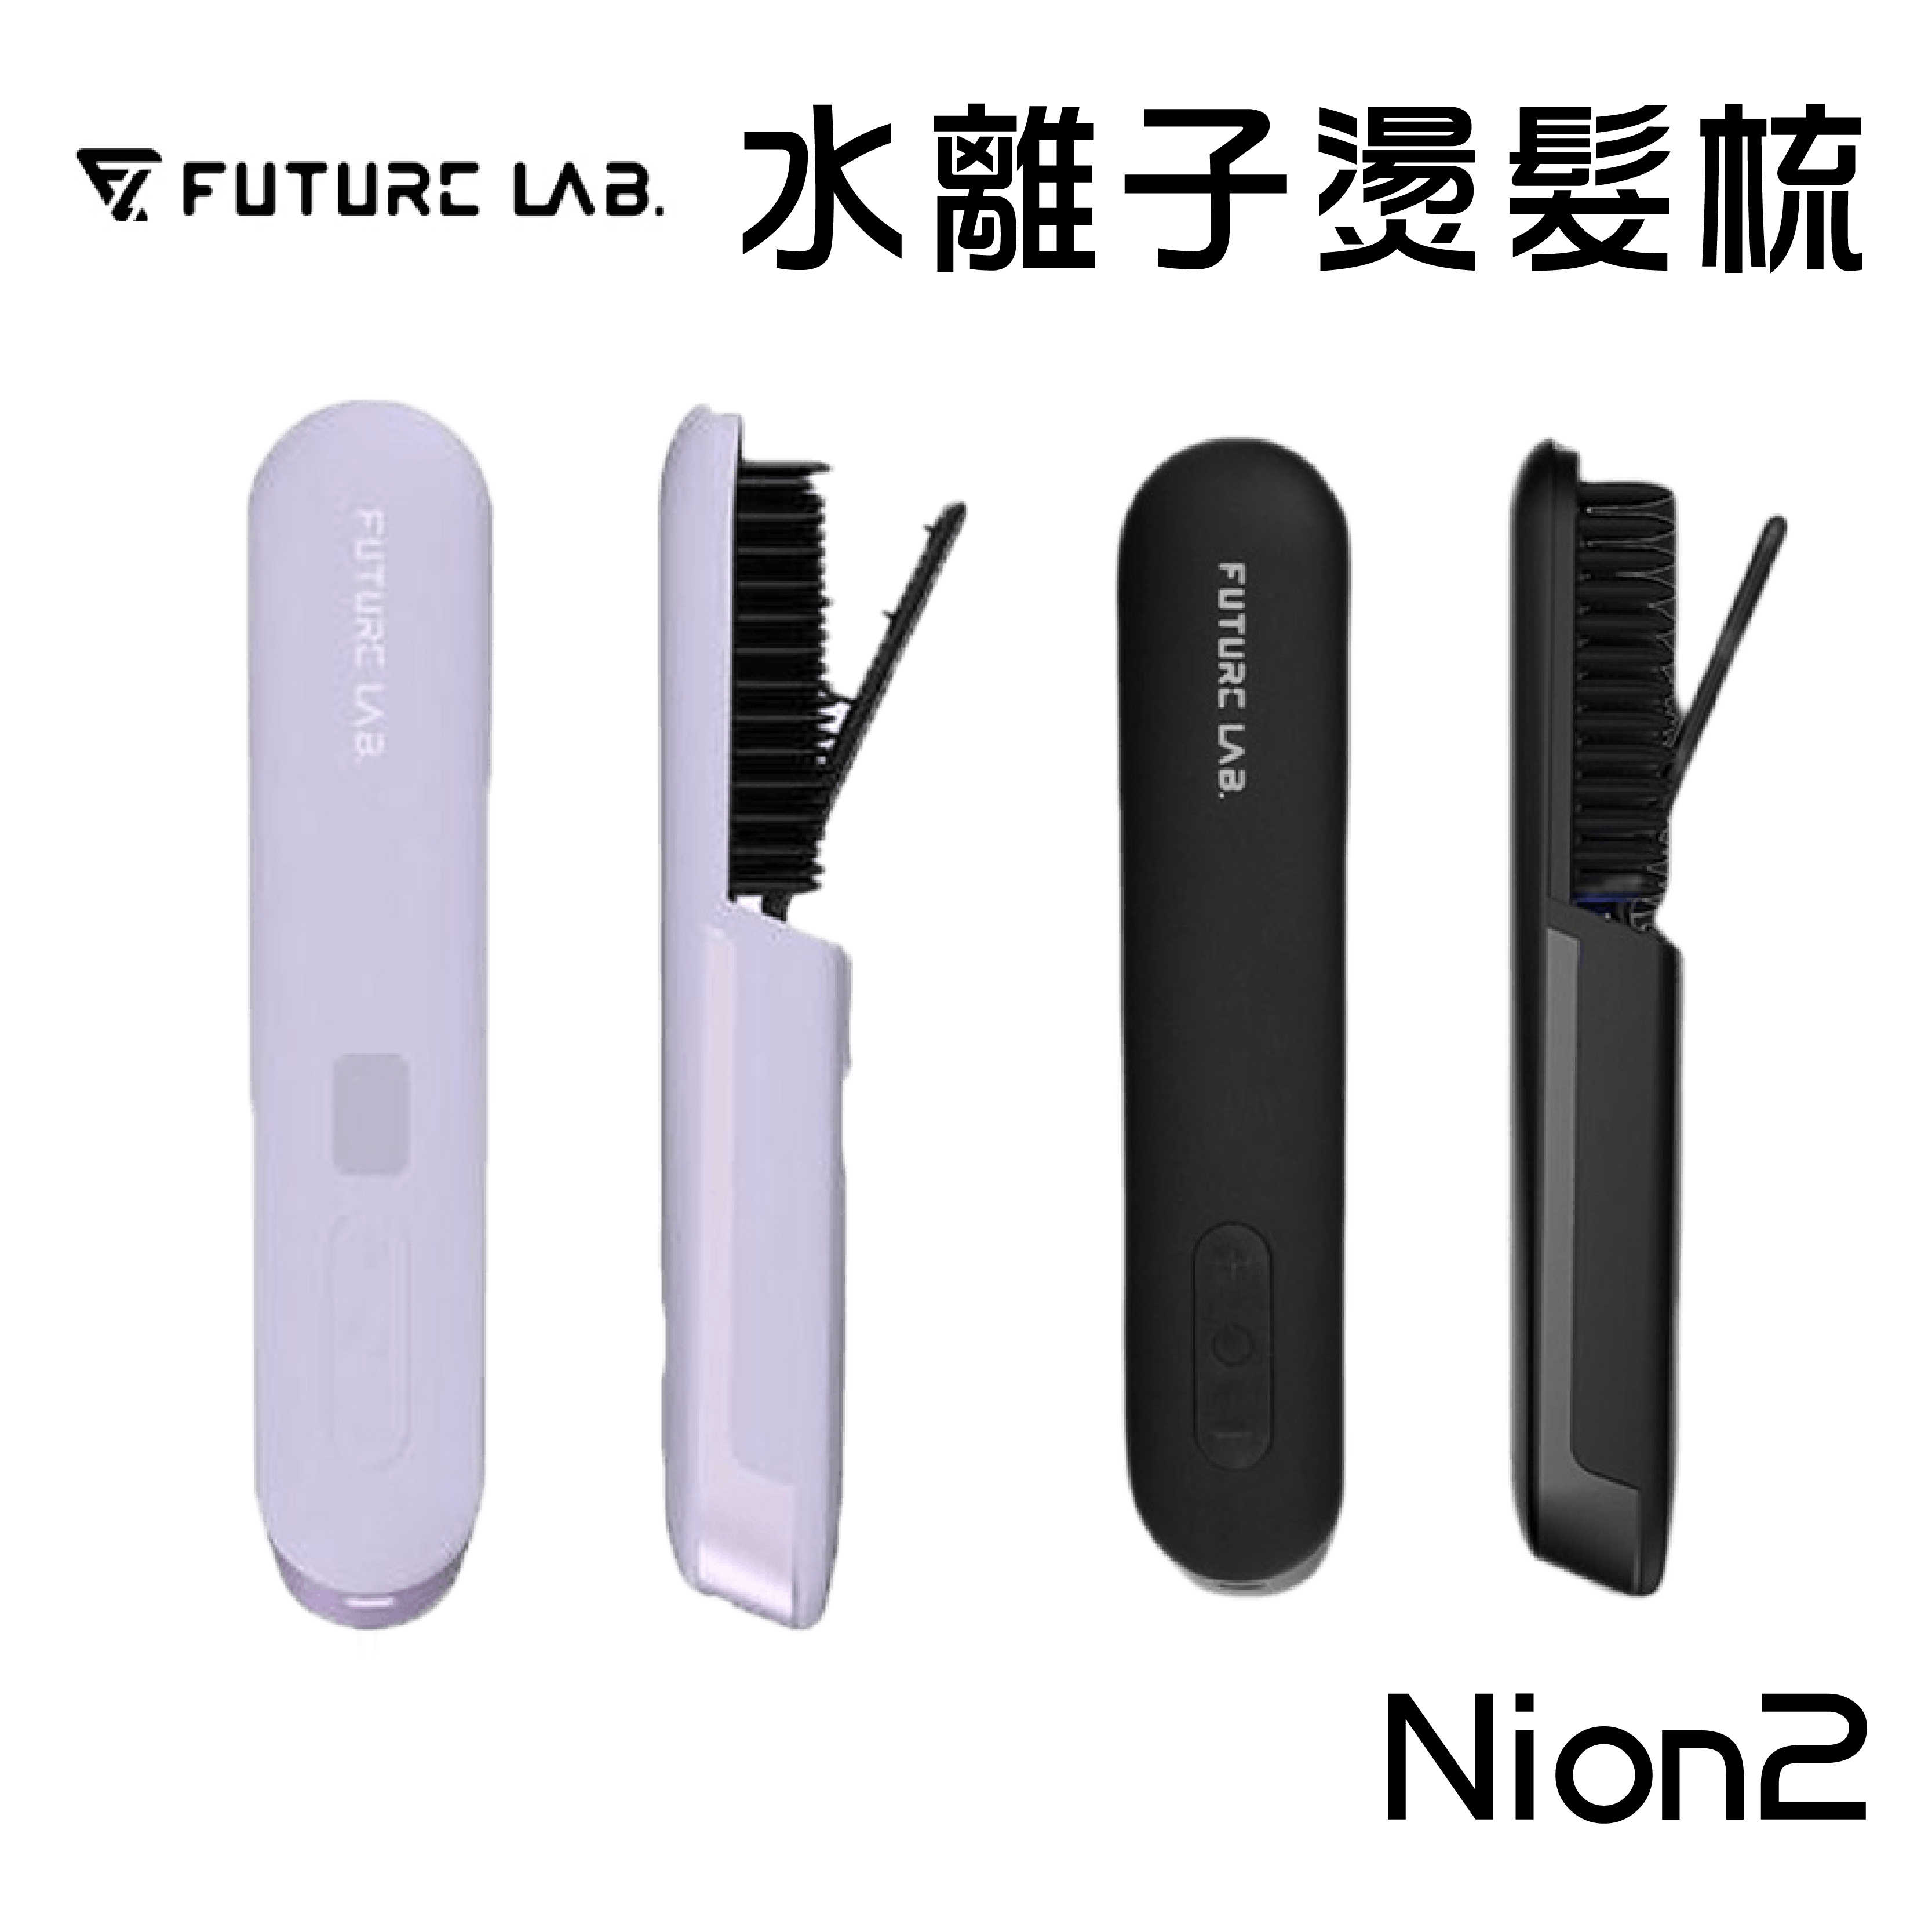 現貨『Nion 2 水離子燙髮梳』Future Lab 丁香紫 未來實驗室 電子梳 離子梳 直髮梳【購知足】